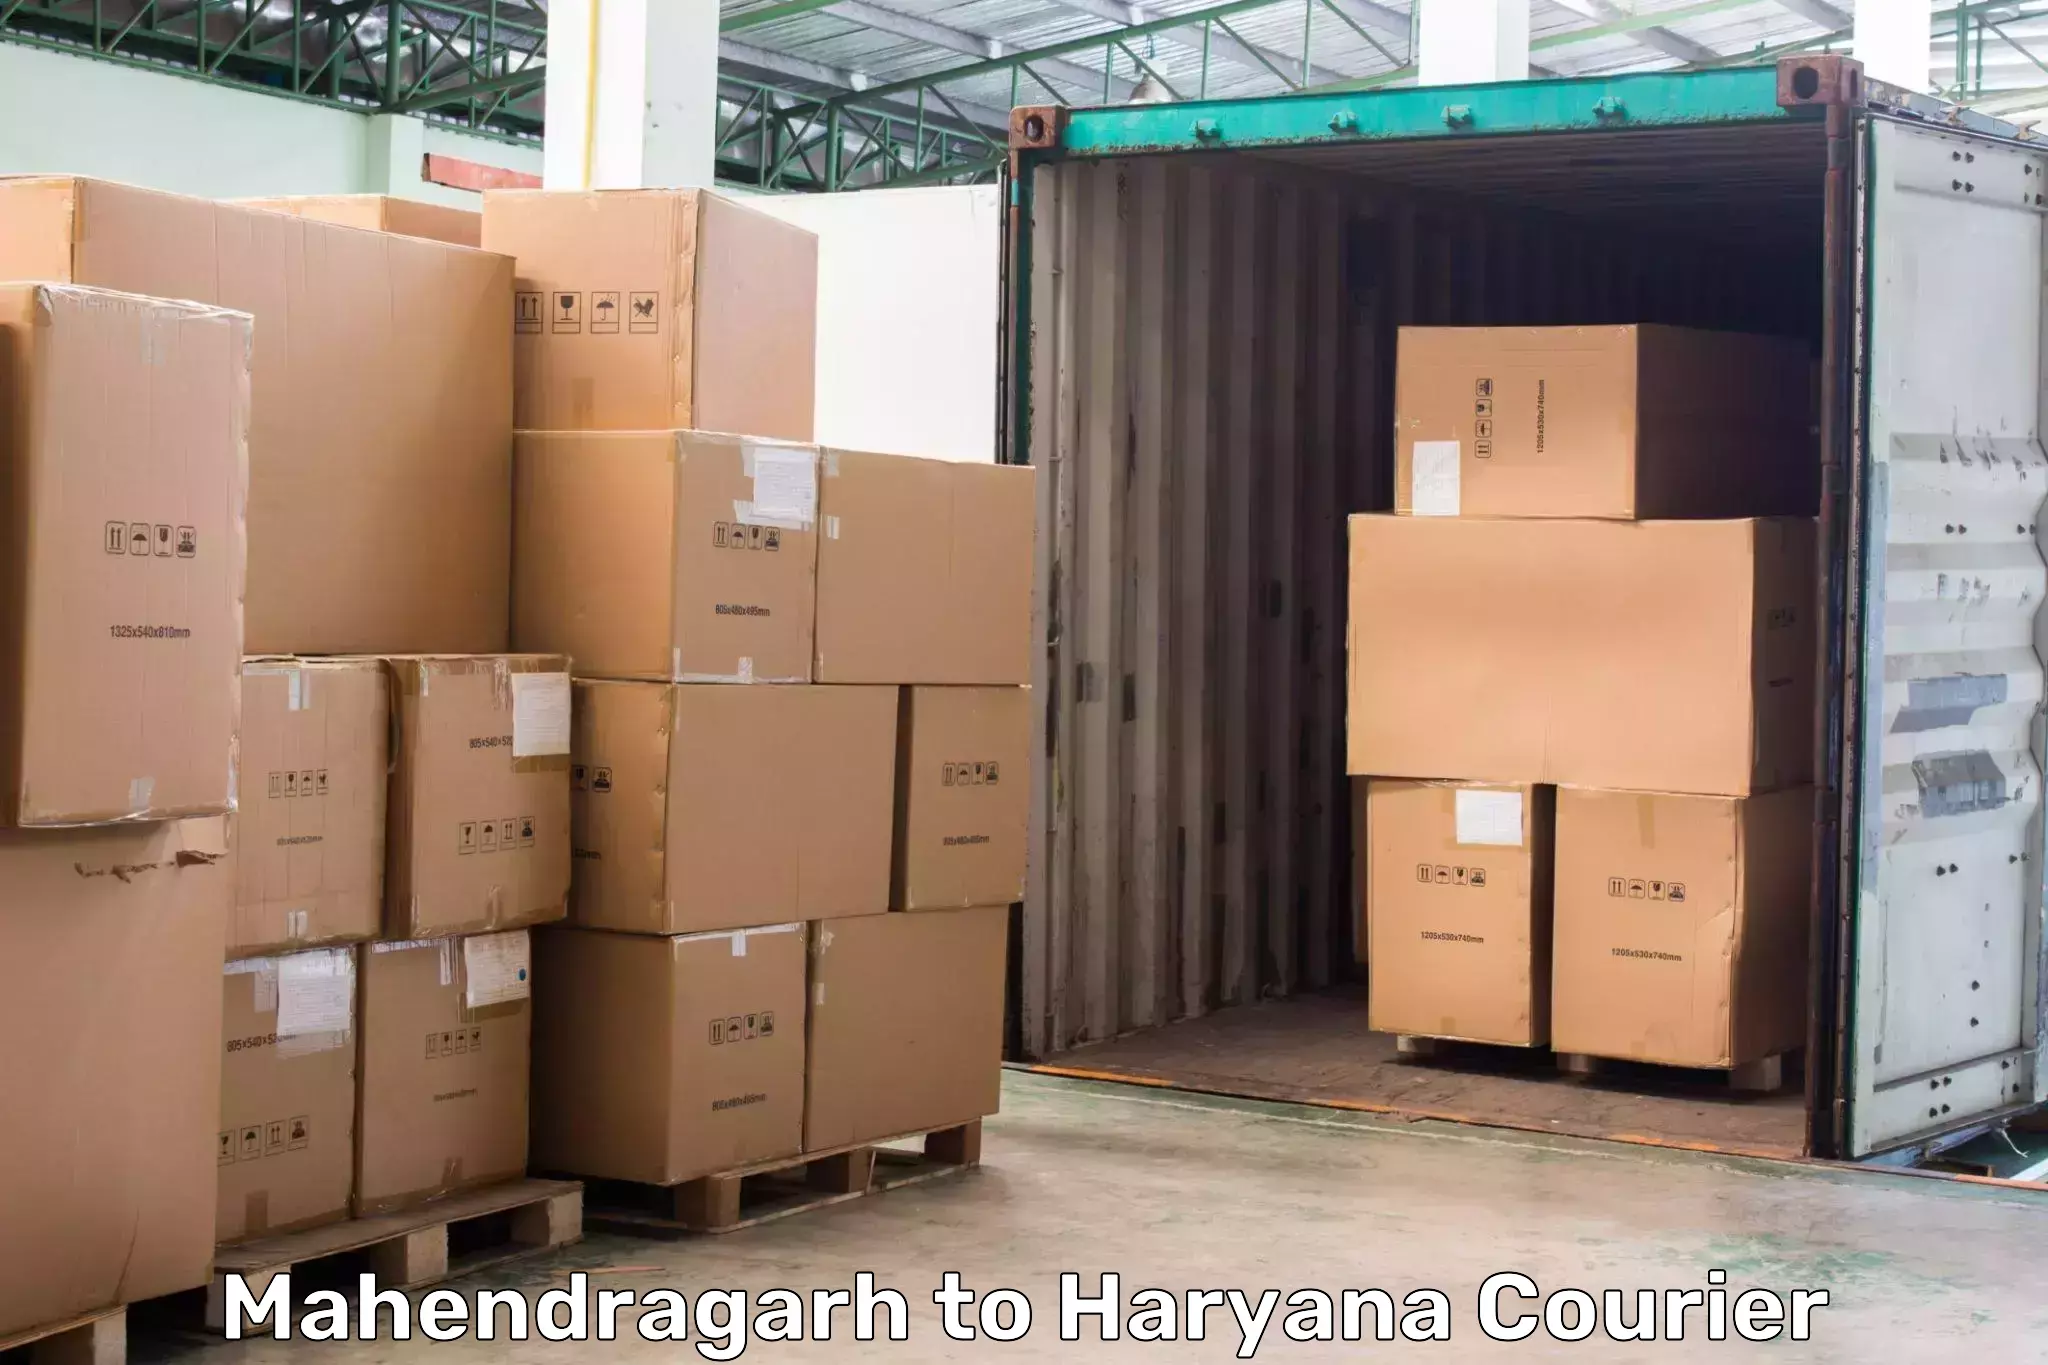 High-performance logistics Mahendragarh to Chirya